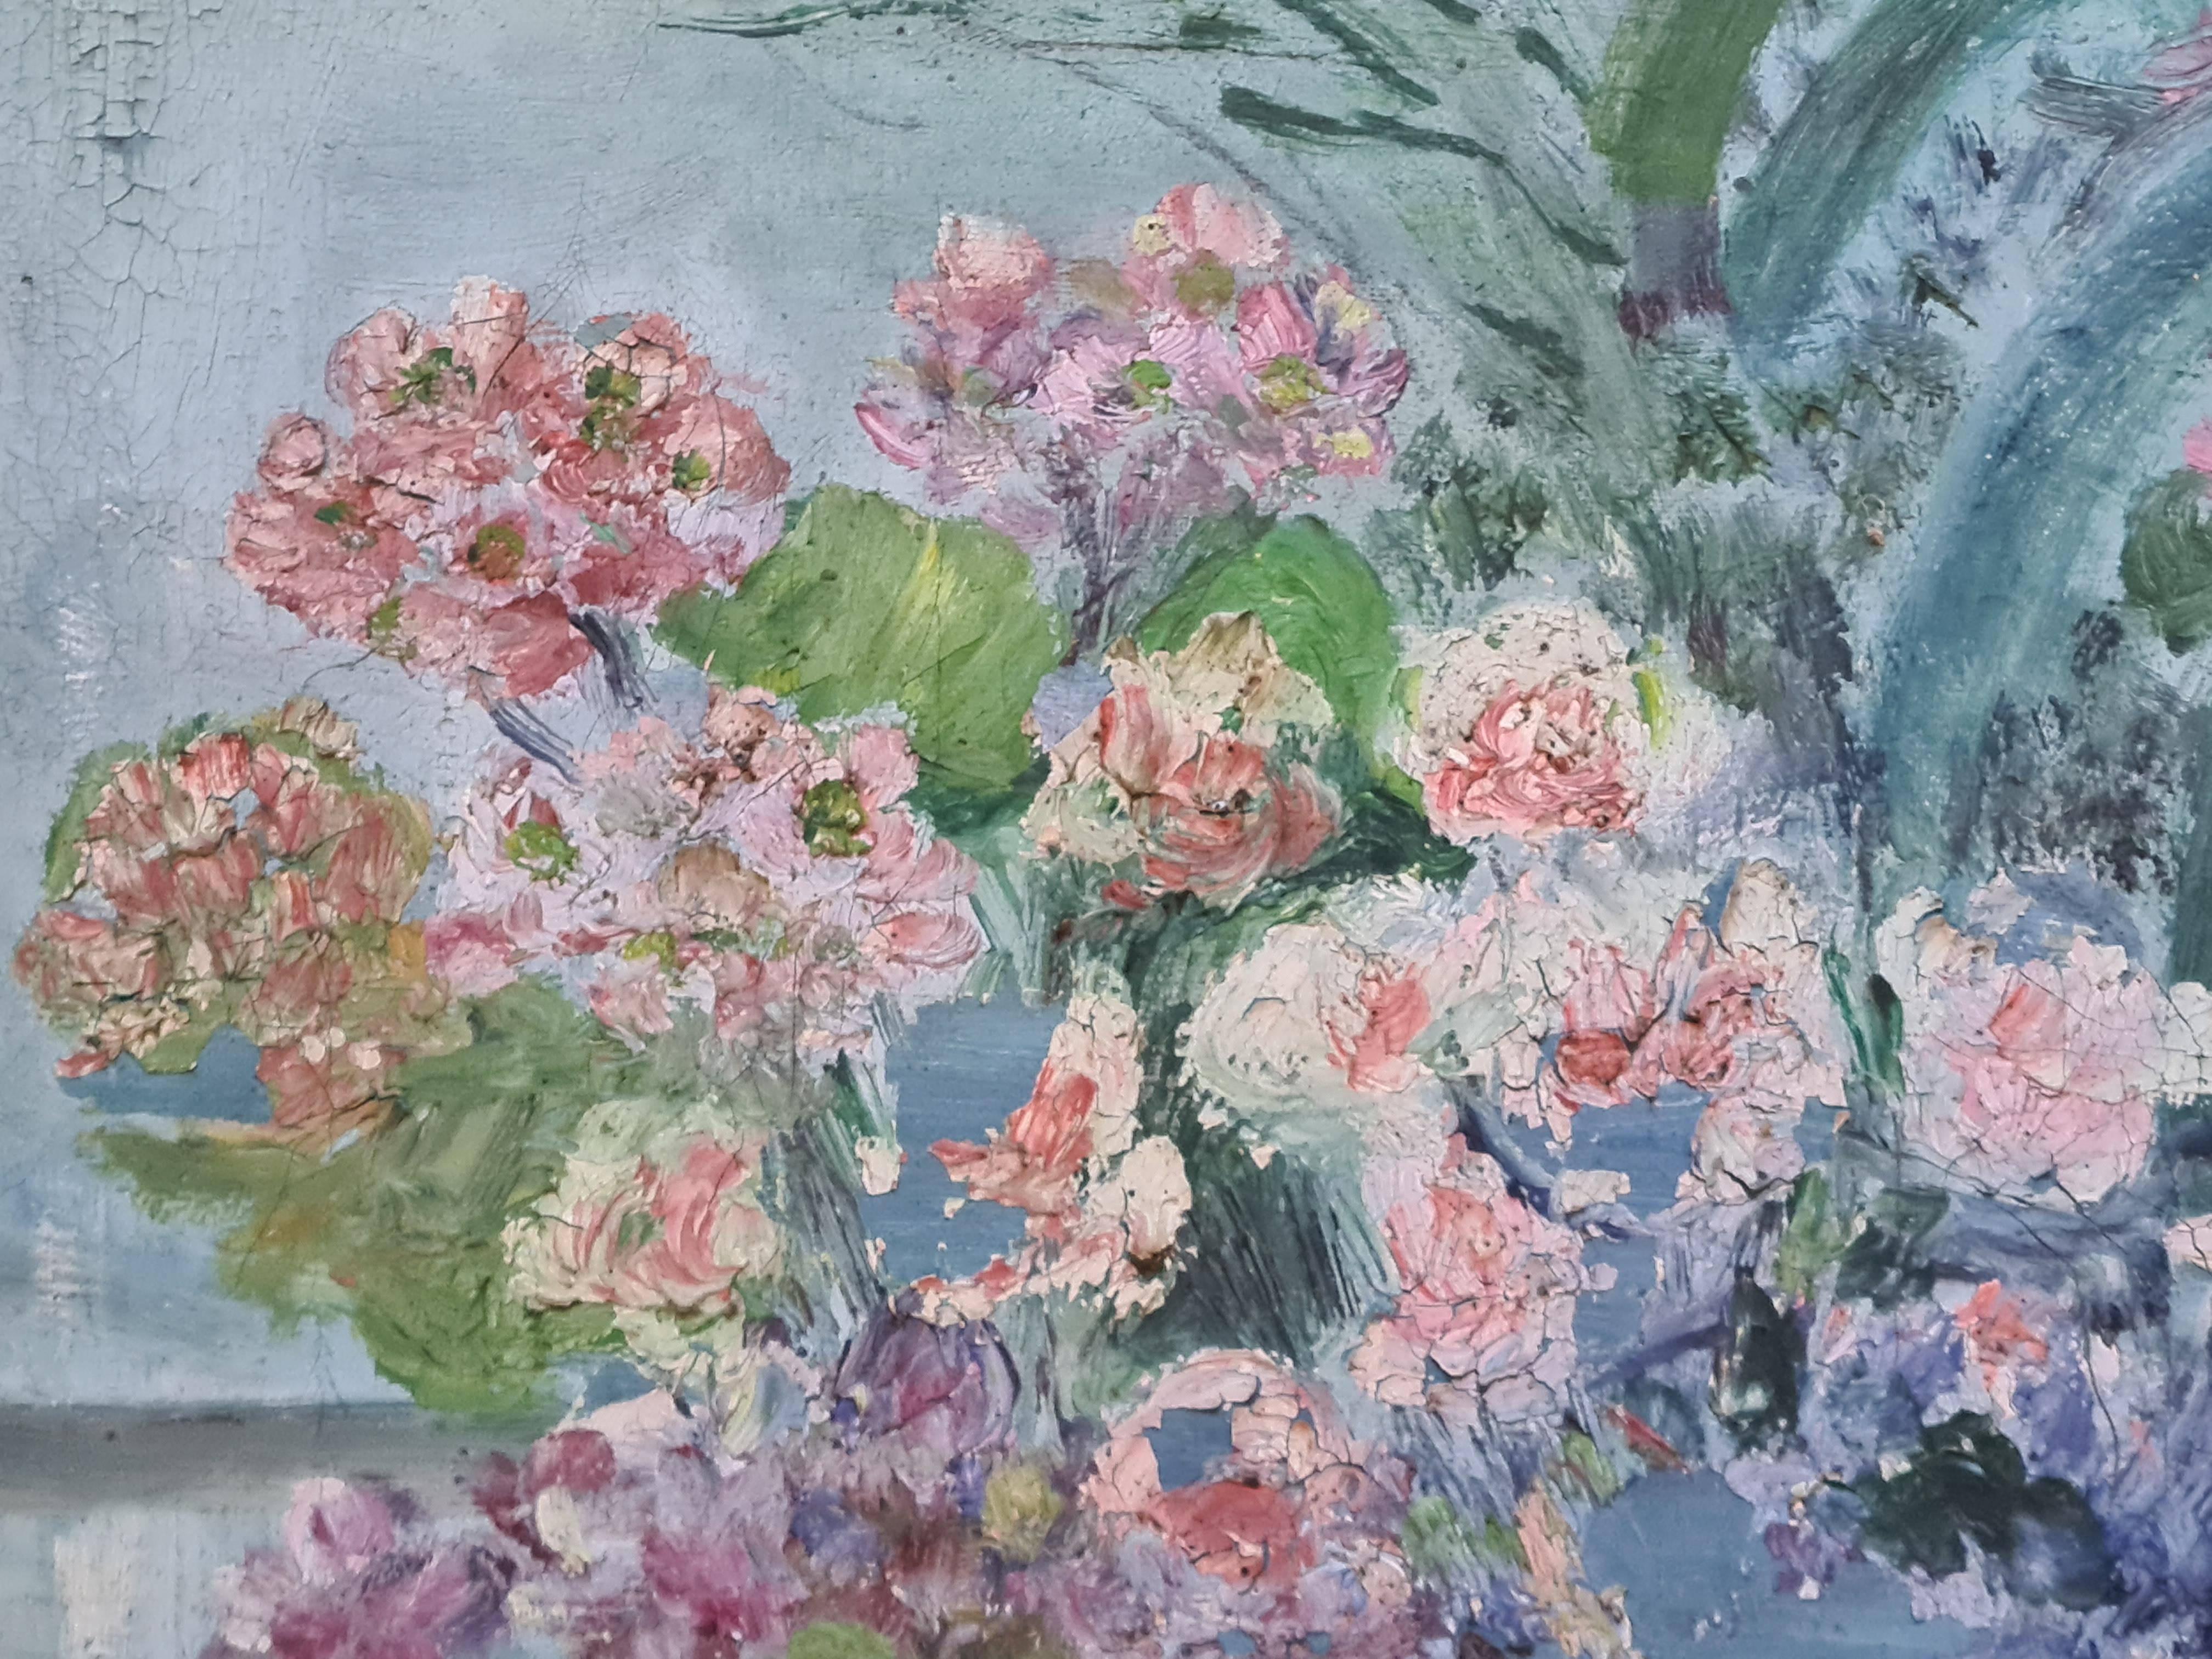 Französischer Impressionist Öl auf Leinwand, Innenansicht, Pflanzen an einem Fenster von June Fortan. Das Gemälde ist unten rechts signiert.

Eine farbenfrohe und üppige Innenansicht einer Sammlung von Pflanzen und Blumen vor einem großen Fenster.